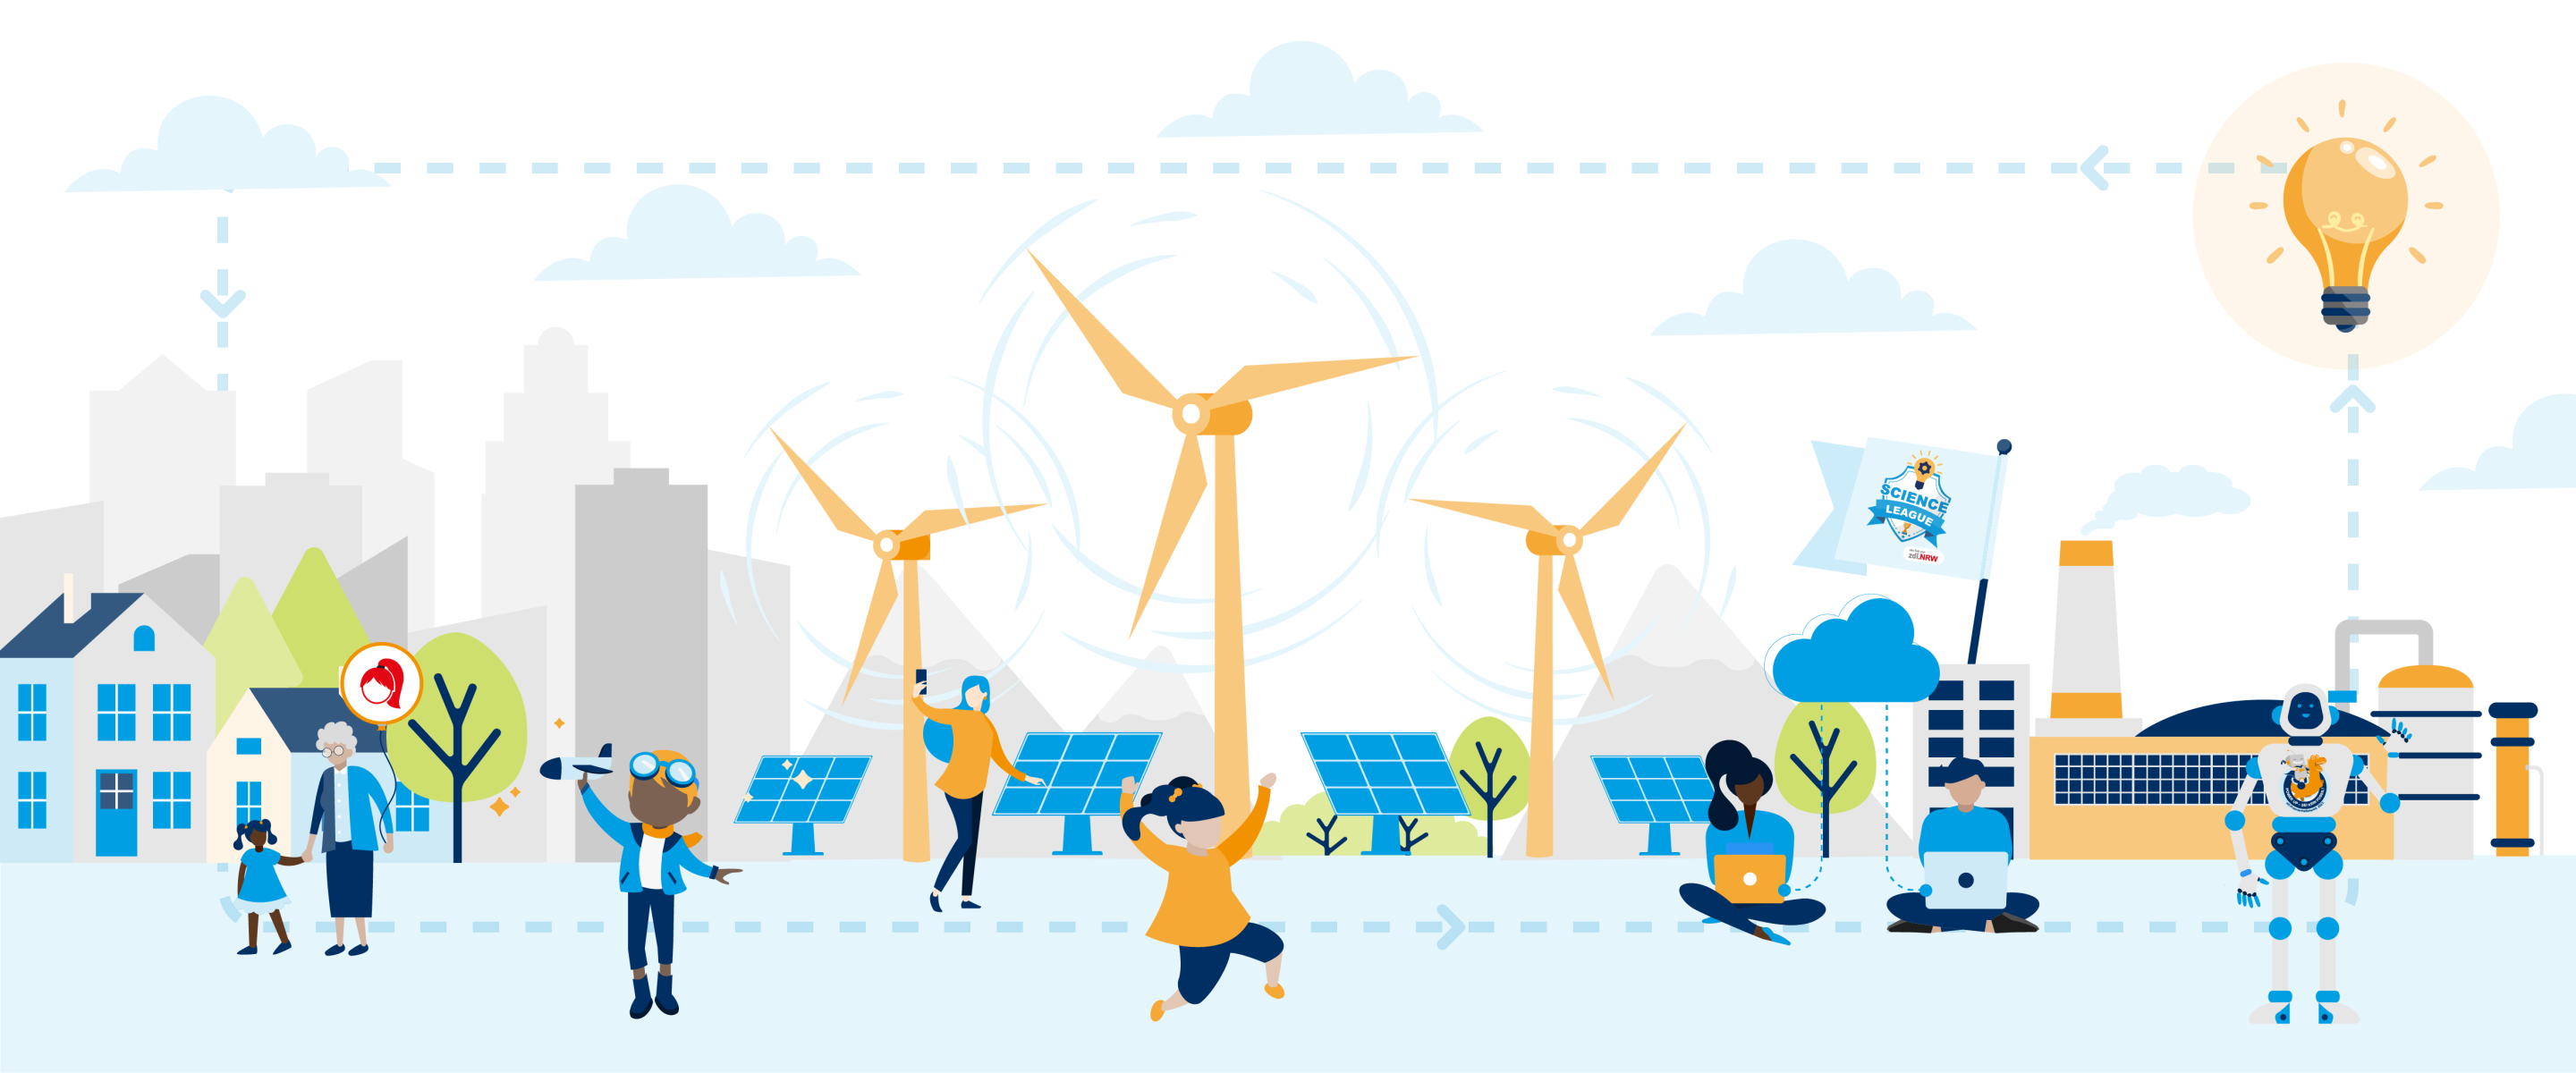 Множество разных людей стоят, сидят, играют и работают на городском фоне с множеством солнечных батарей и ветряных турбин. Изображение символизирует устойчивое управление энергией.